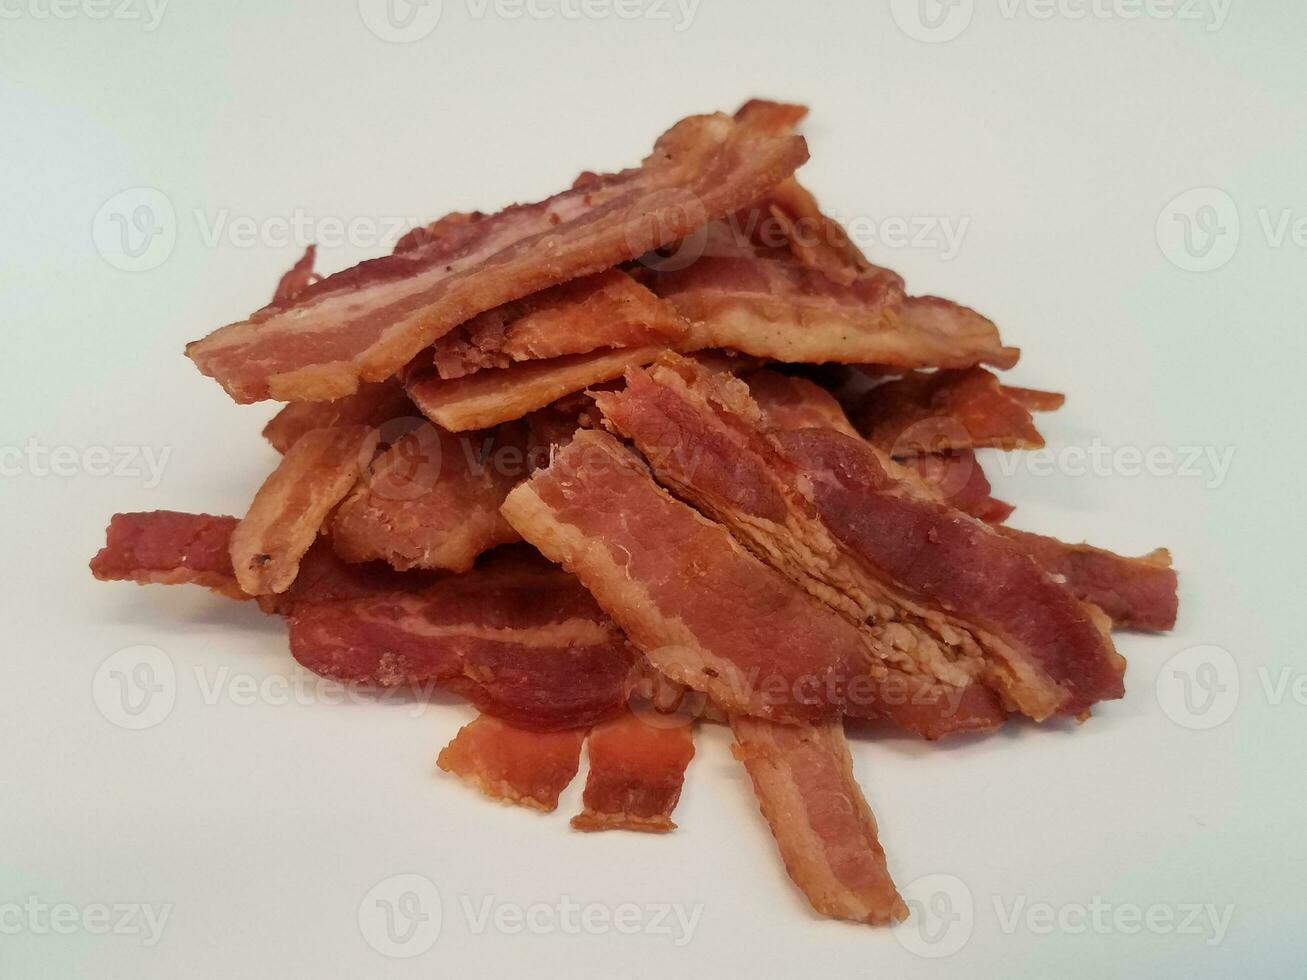 pilha ou monte de tiras de bacon na superfície branca foto